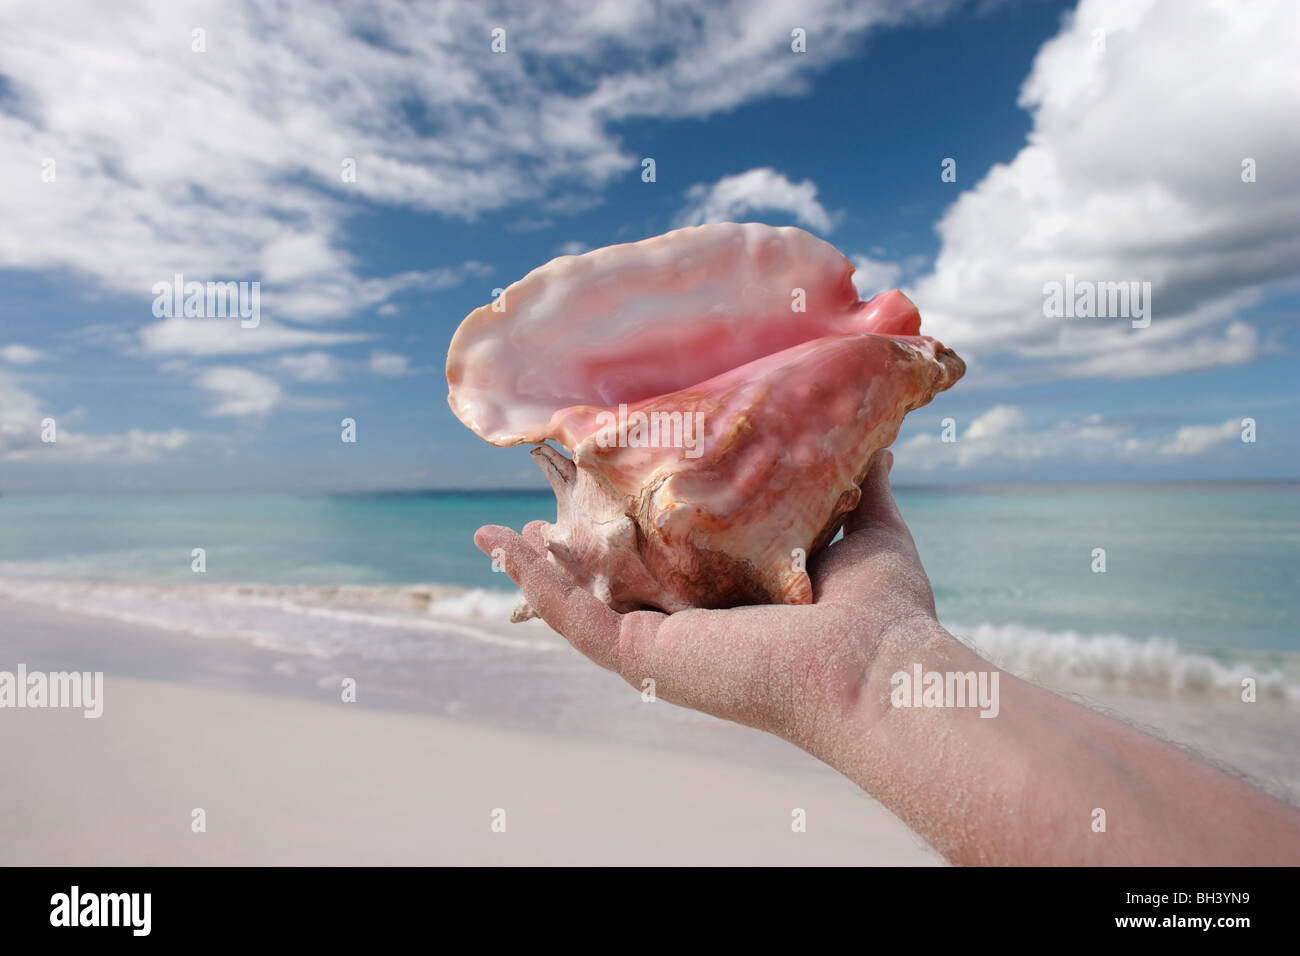 Mannes Hand mit einer großen Muschel in der Luft an einem tropischen Strand Stockfoto